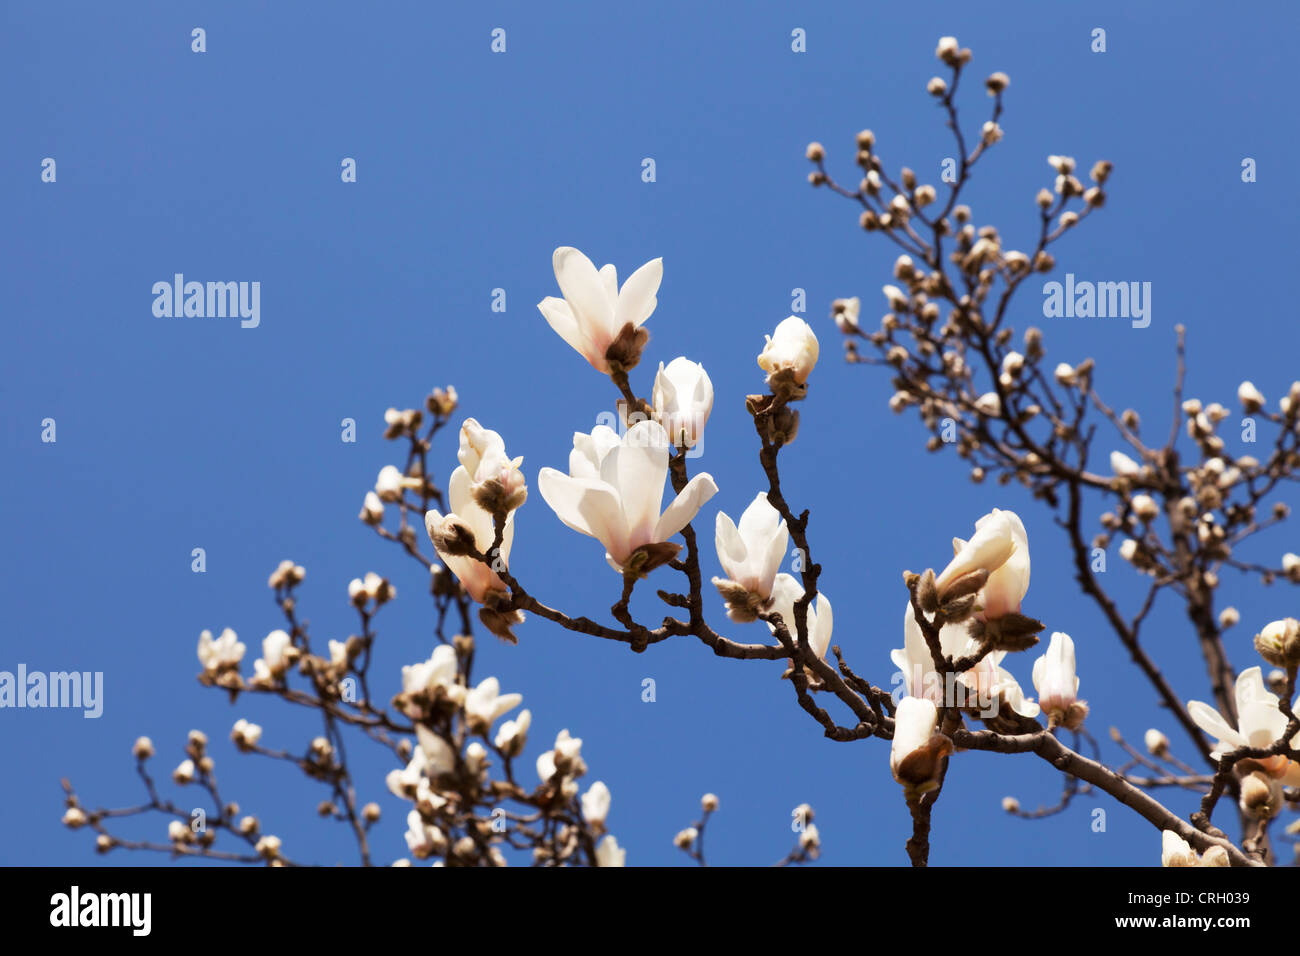 Uno dei primi segni di primavera a Pechino in Cina - magnolia che esplode nel blumo contro un profondo cielo blu. DOF poco profondo. Foto Stock